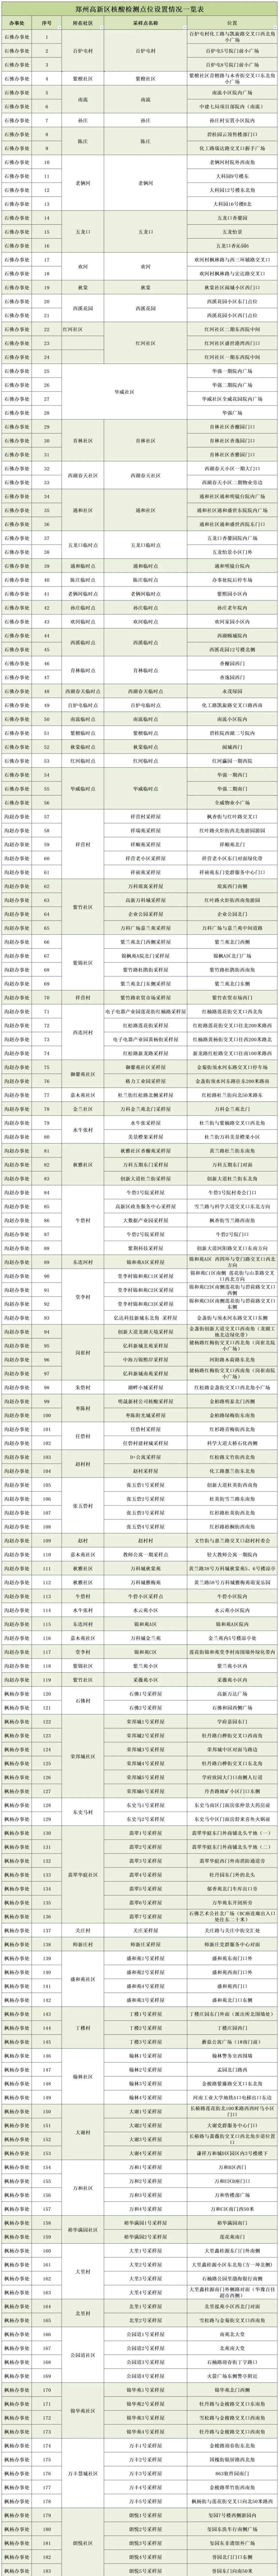 郑州高新区连续3天开展全员核酸检测 不检测将变码